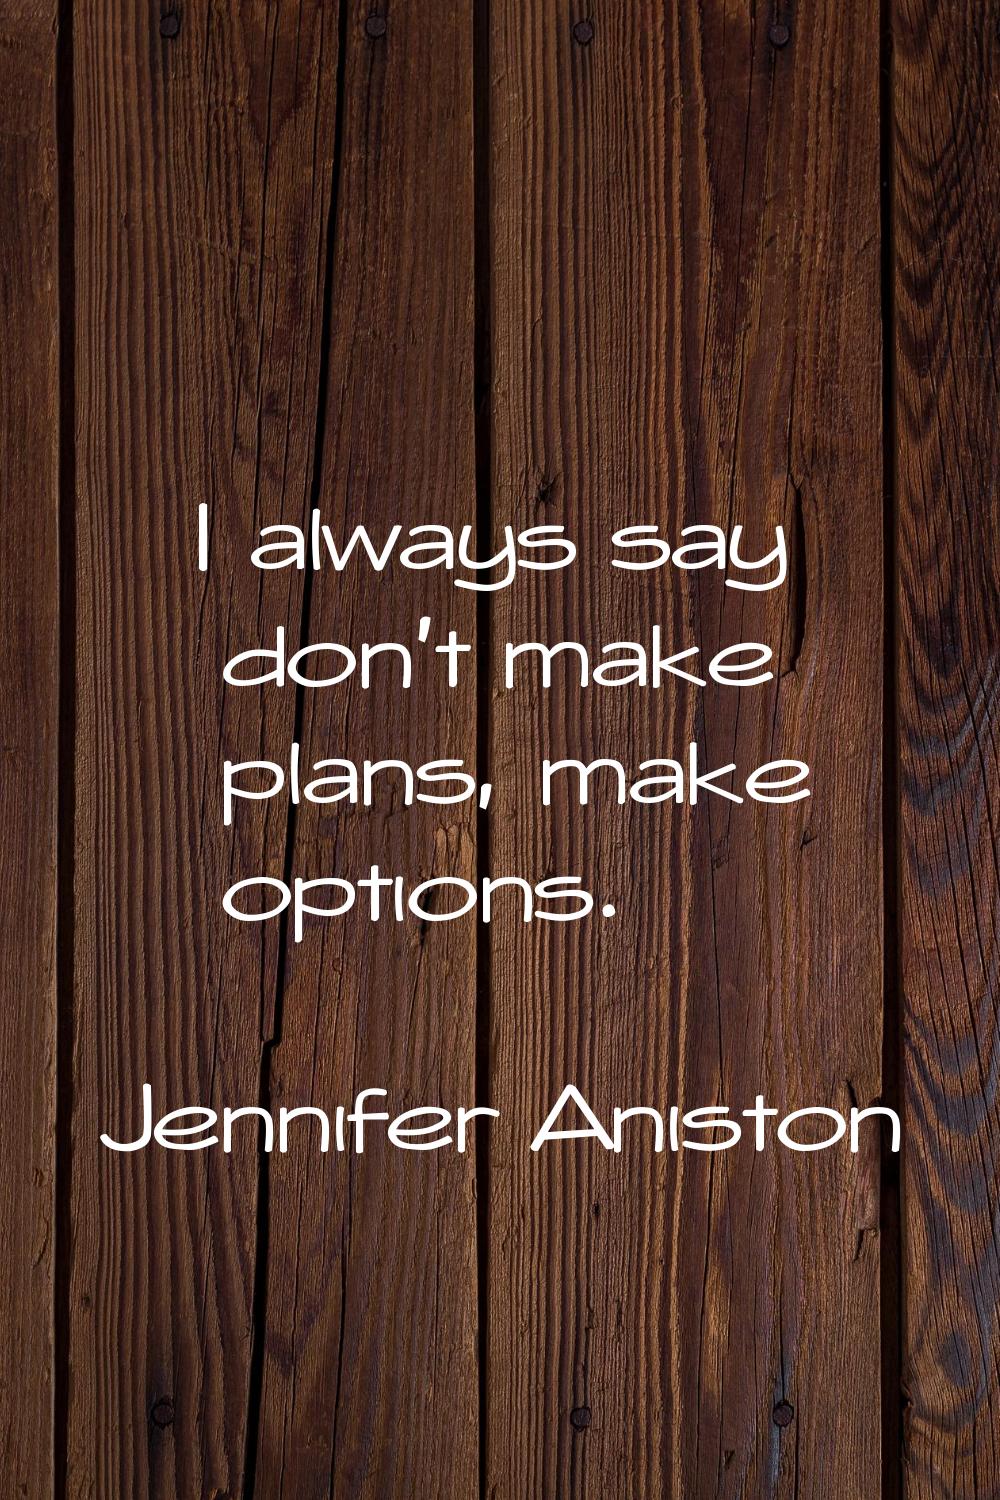 I always say don't make plans, make options.